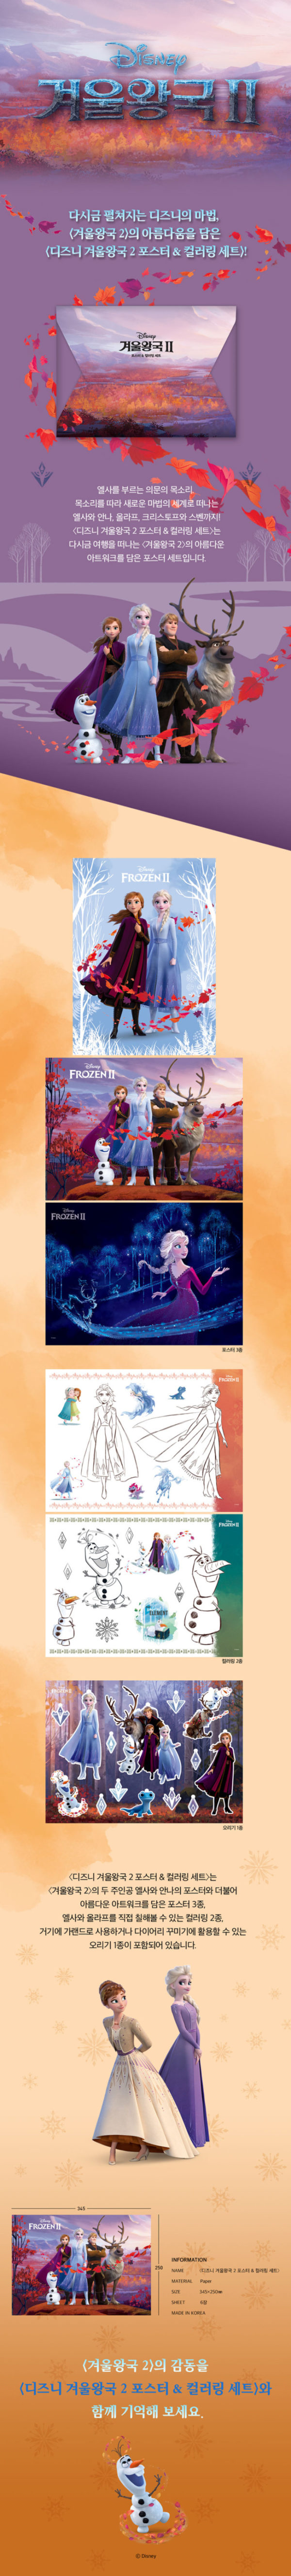 アナと雪の女王2 ポスター&塗り絵セット ディズニーストアー 通販